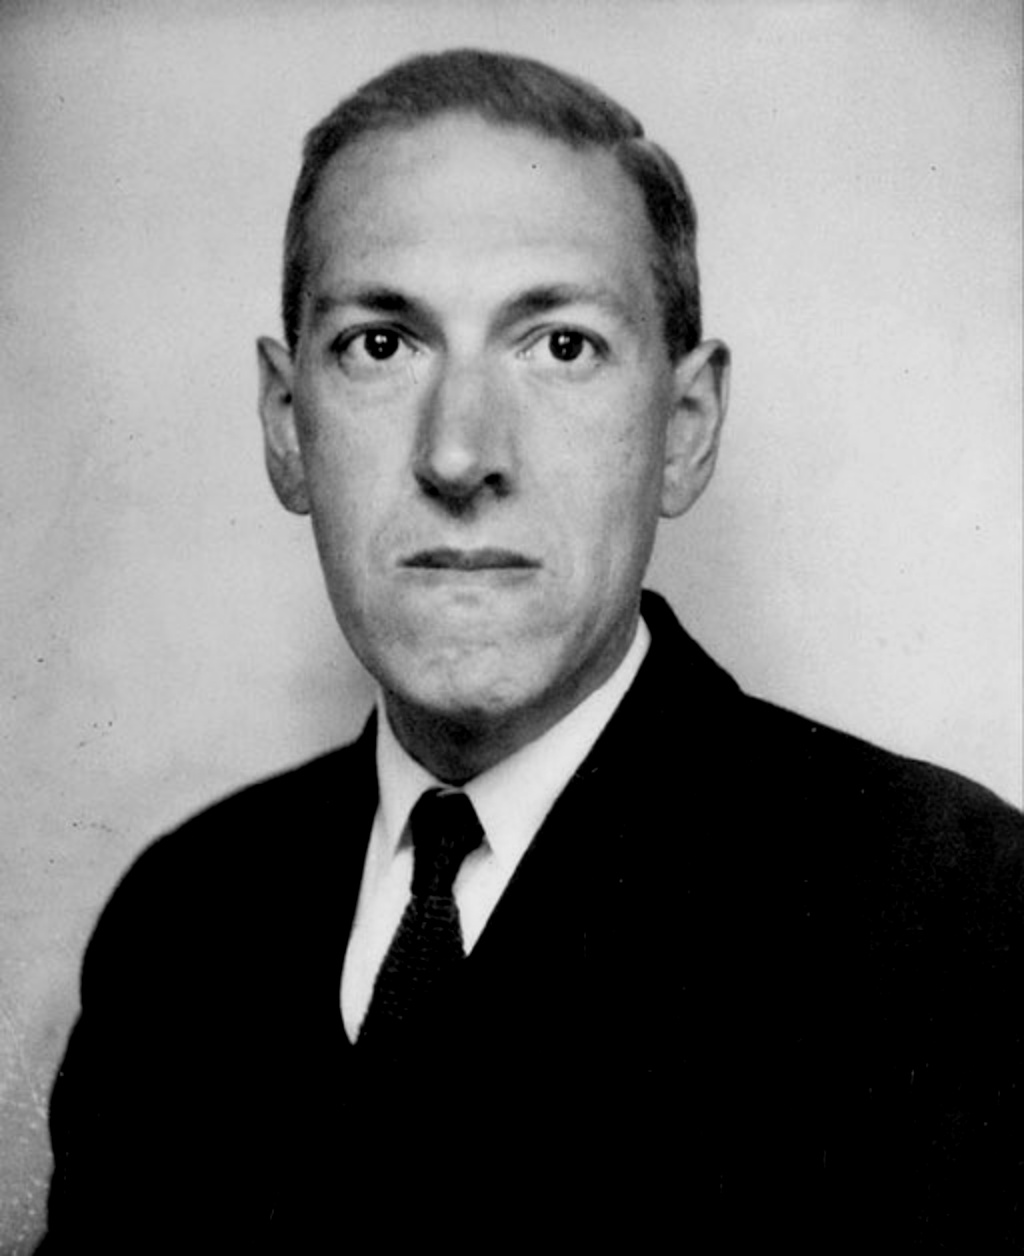 H. P. Lovecraft, The Necronomicon